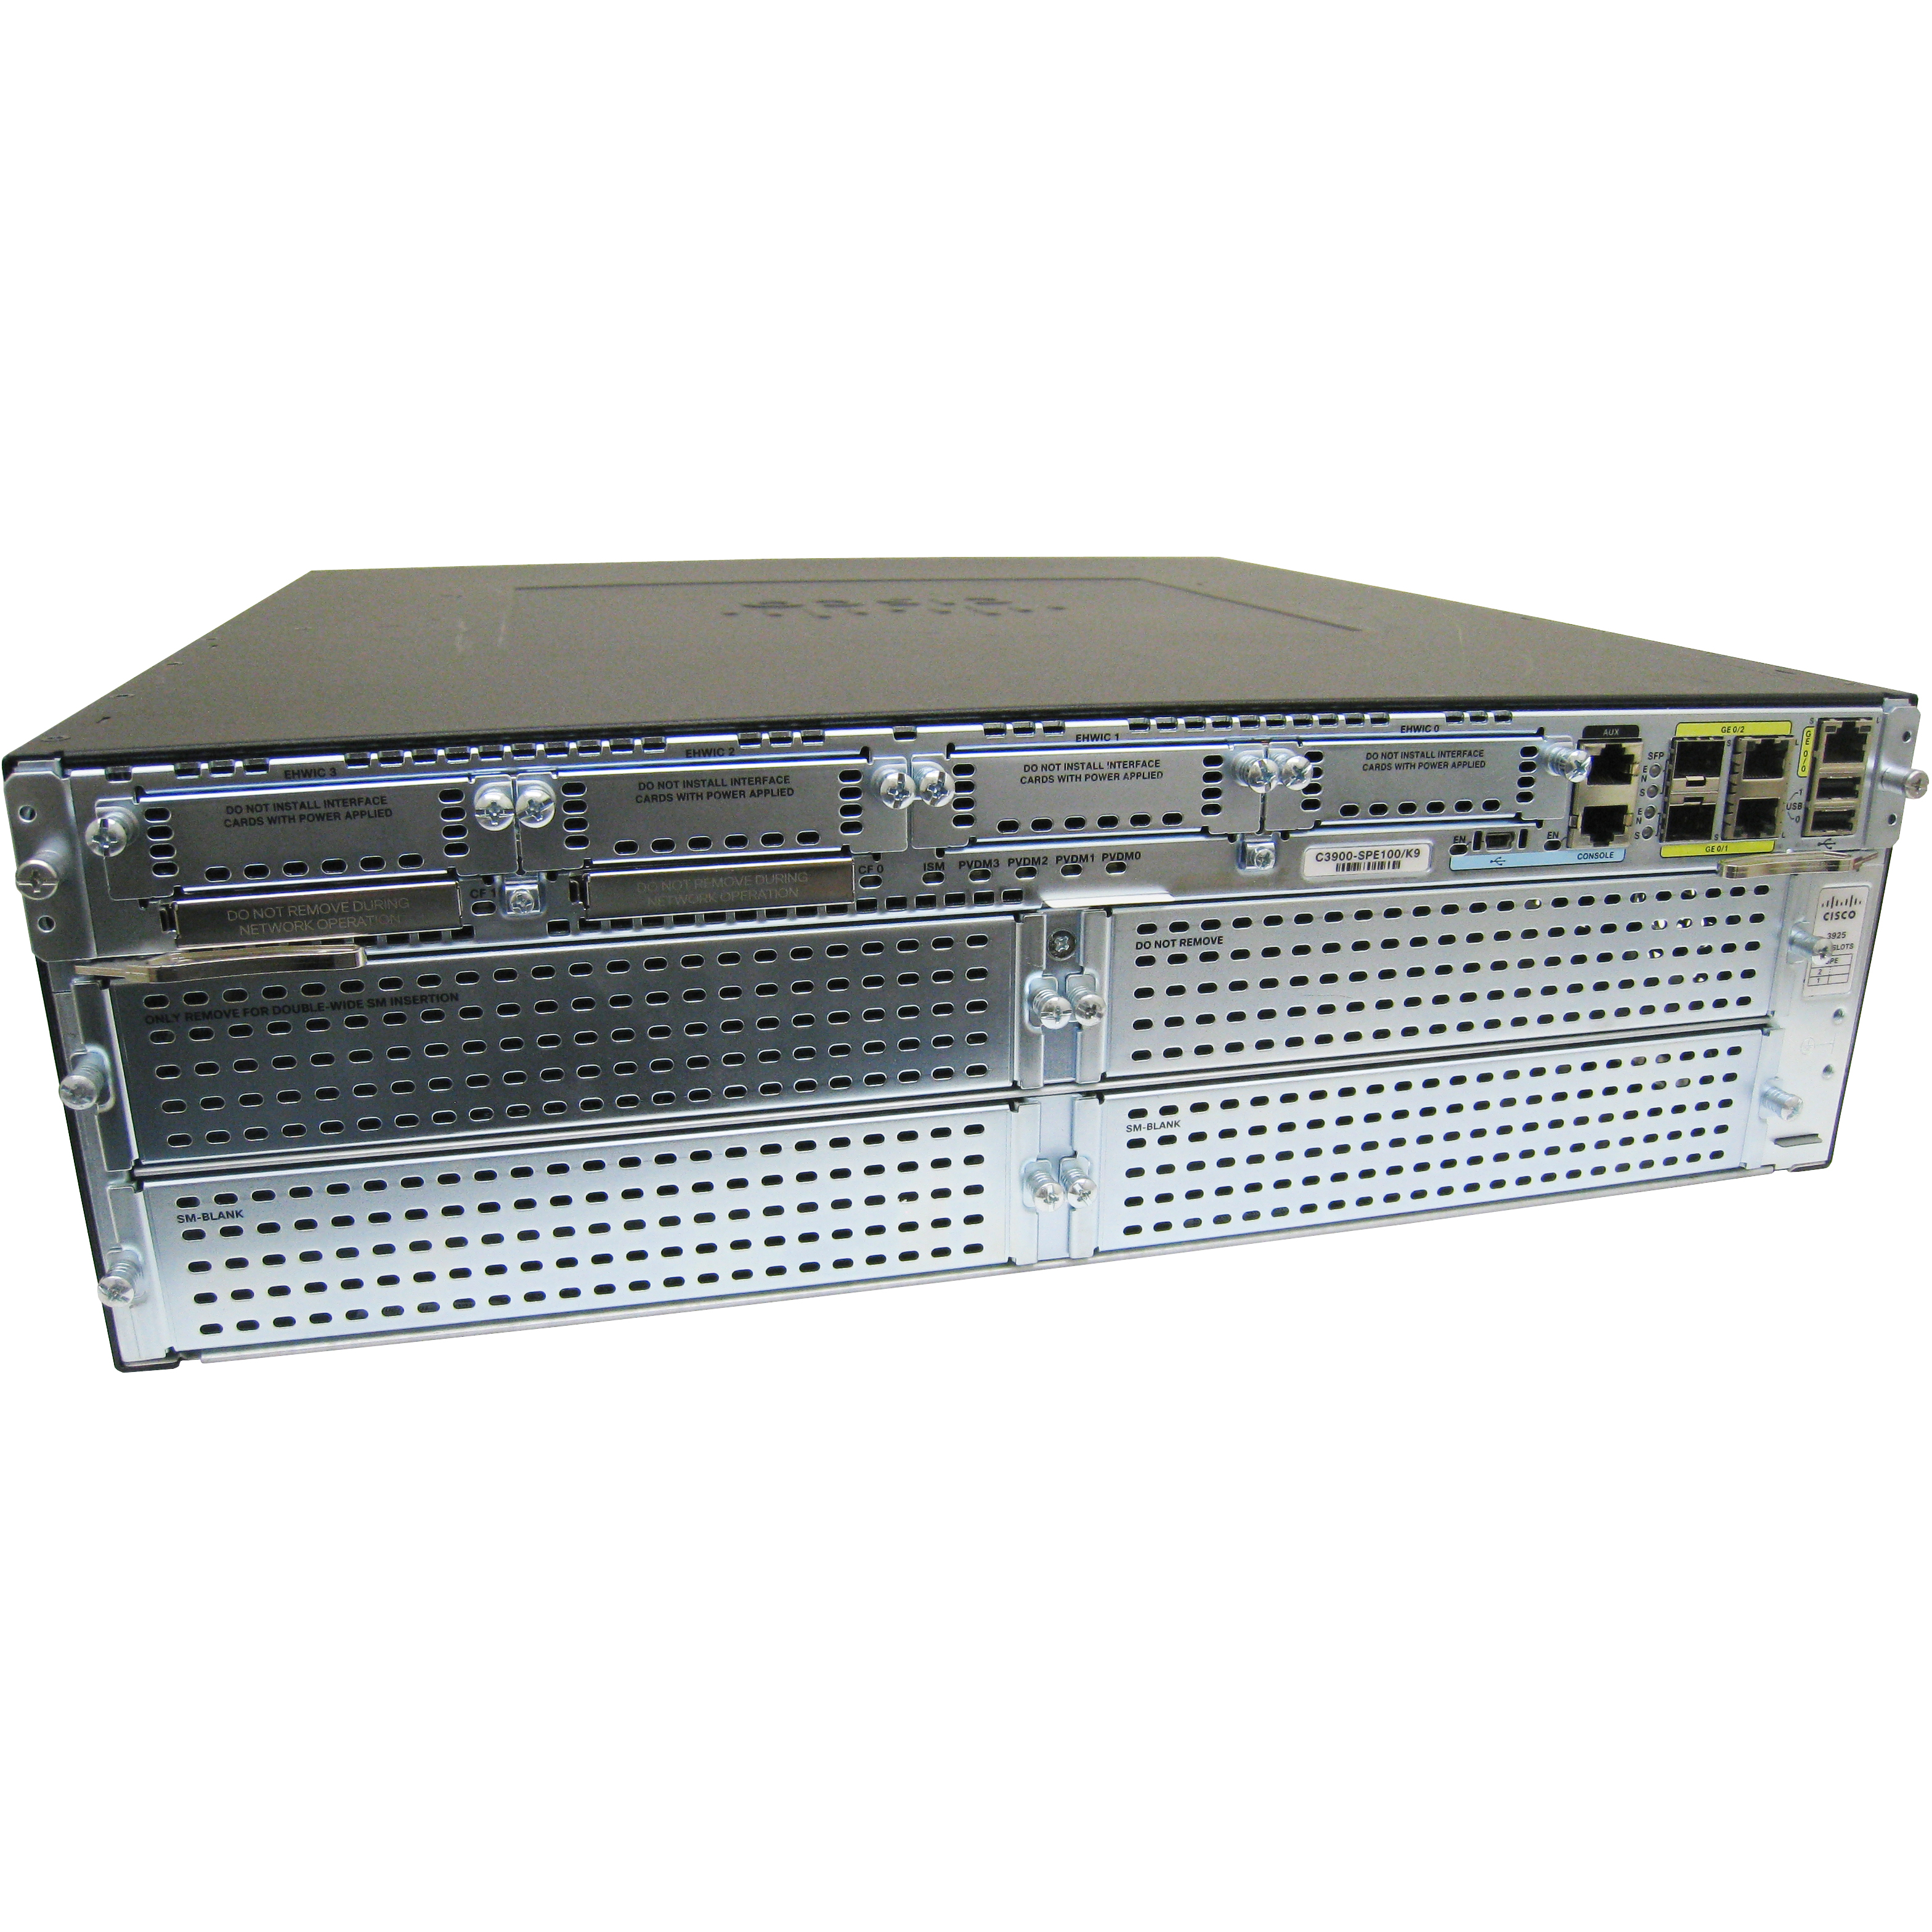 Cisco CISCO3945/K9